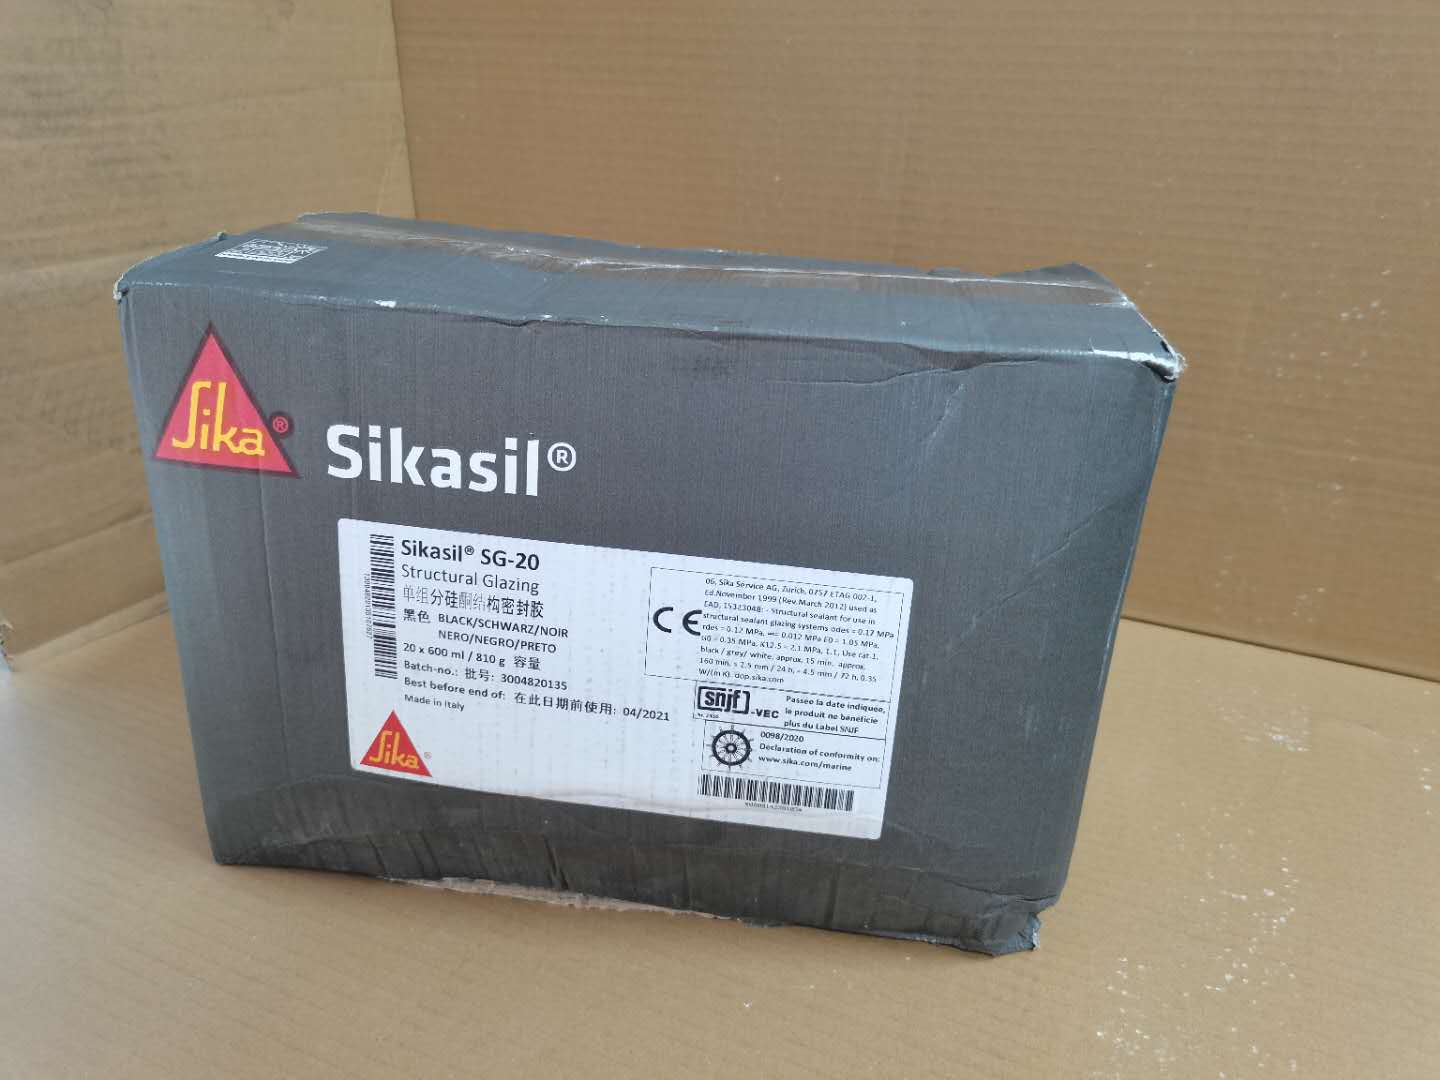 西卡单组份硅酮结构密封胶Sikasil SG-20